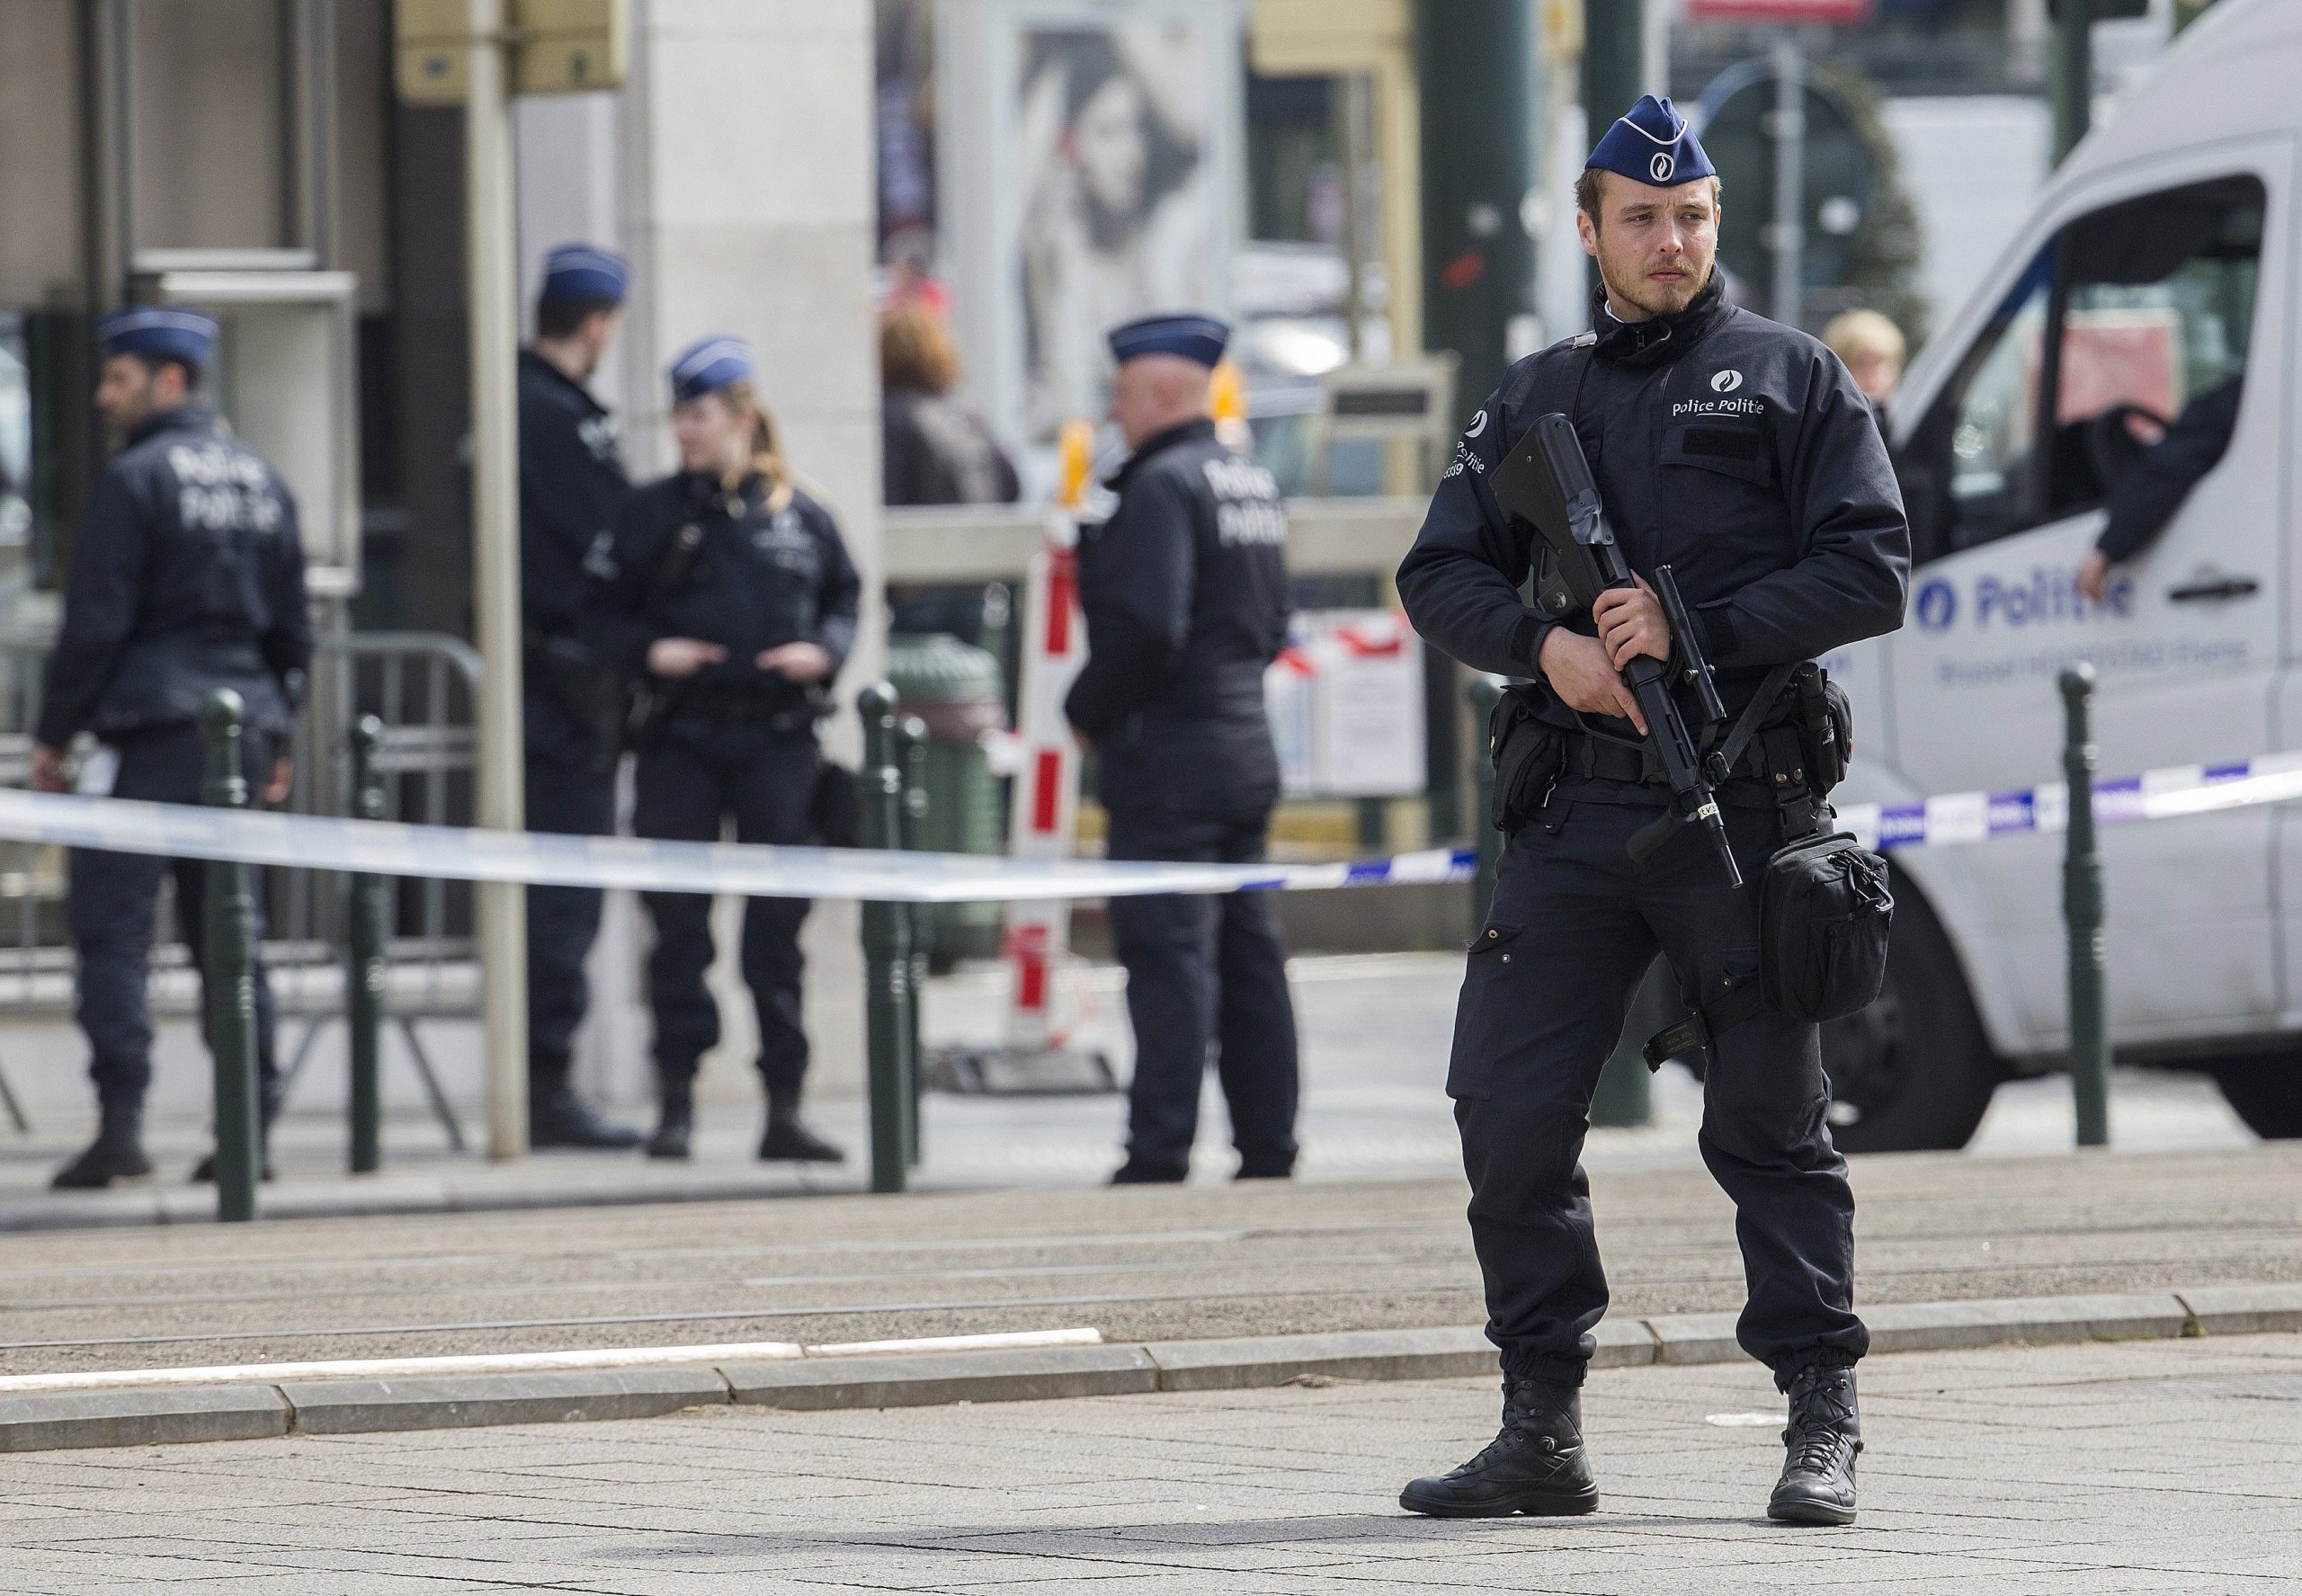 Во Франции мужчина с ножом напал на двух полицейских - Фото